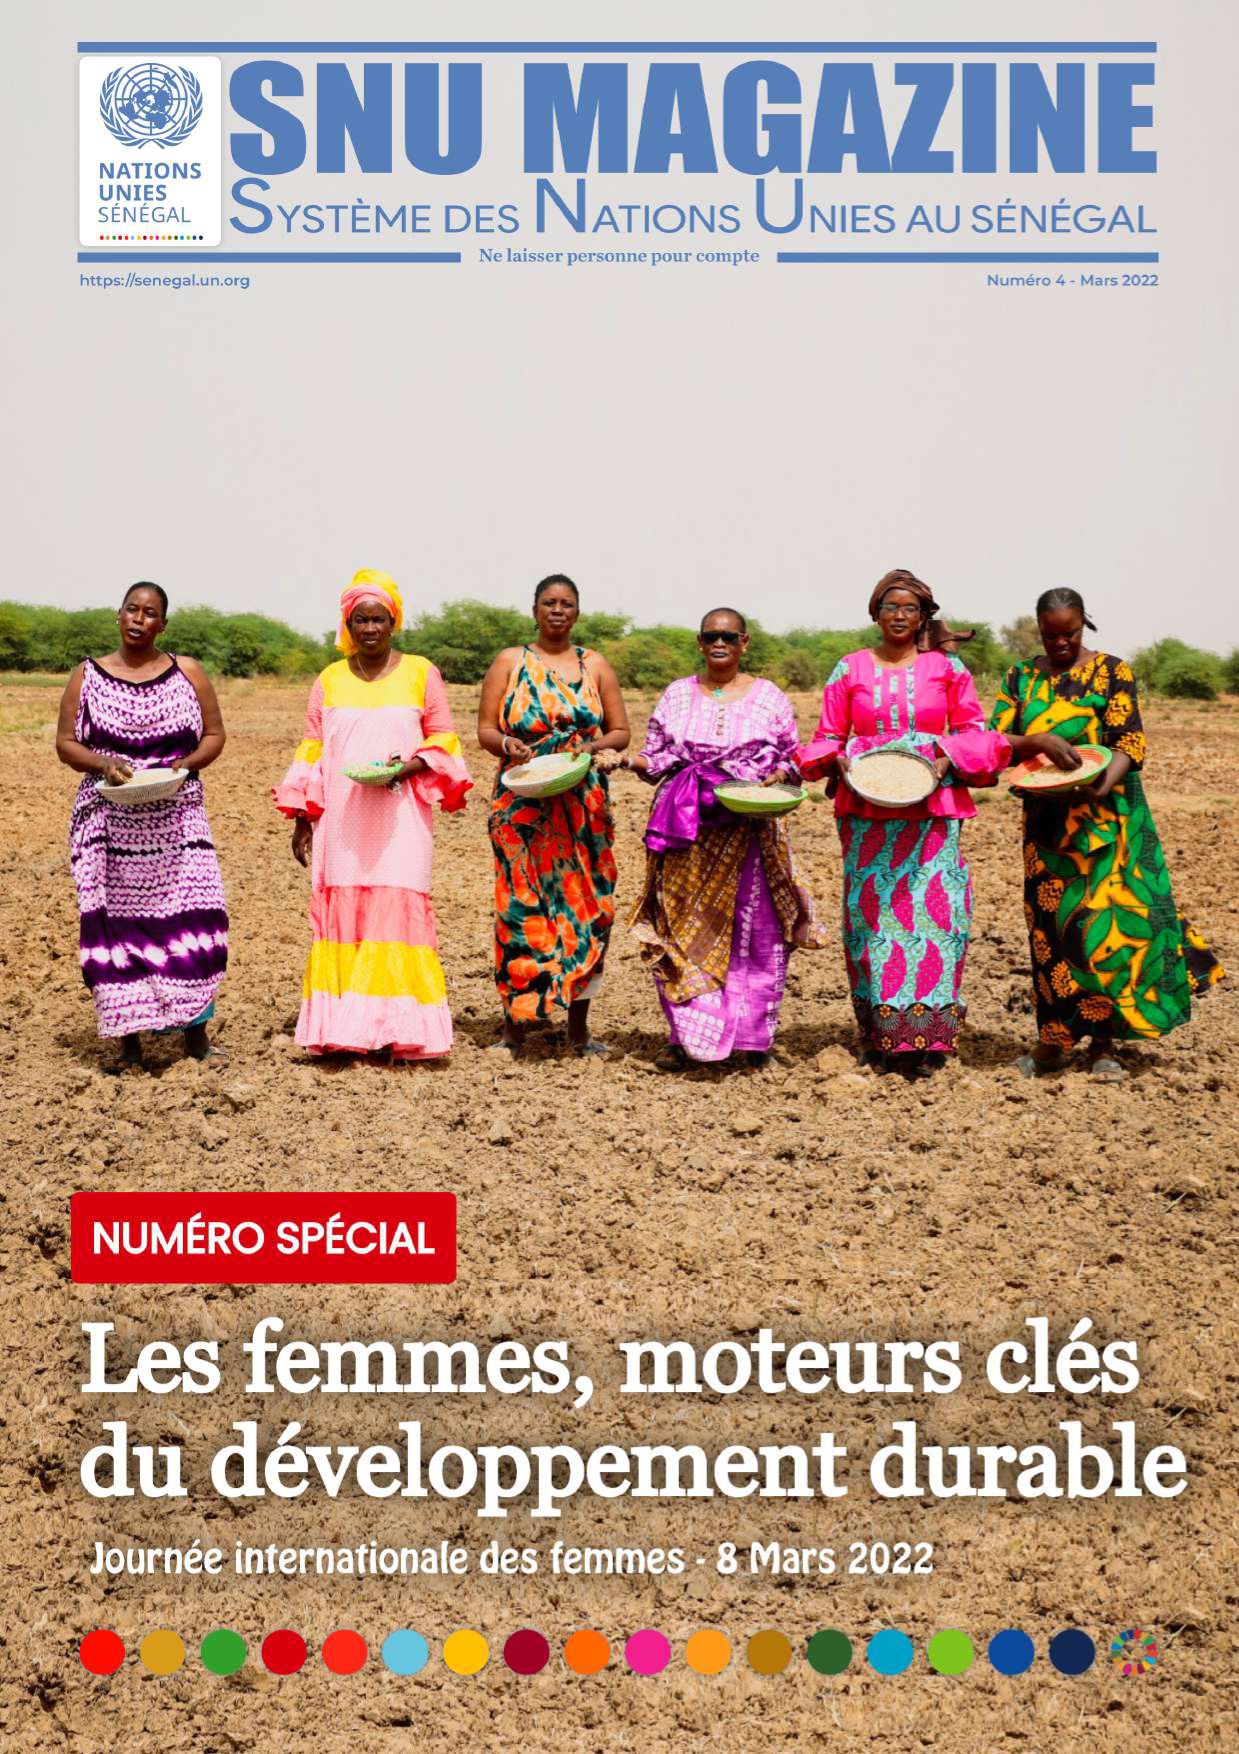 SNU Magazine : Les femmes moteurs clés du développement durable